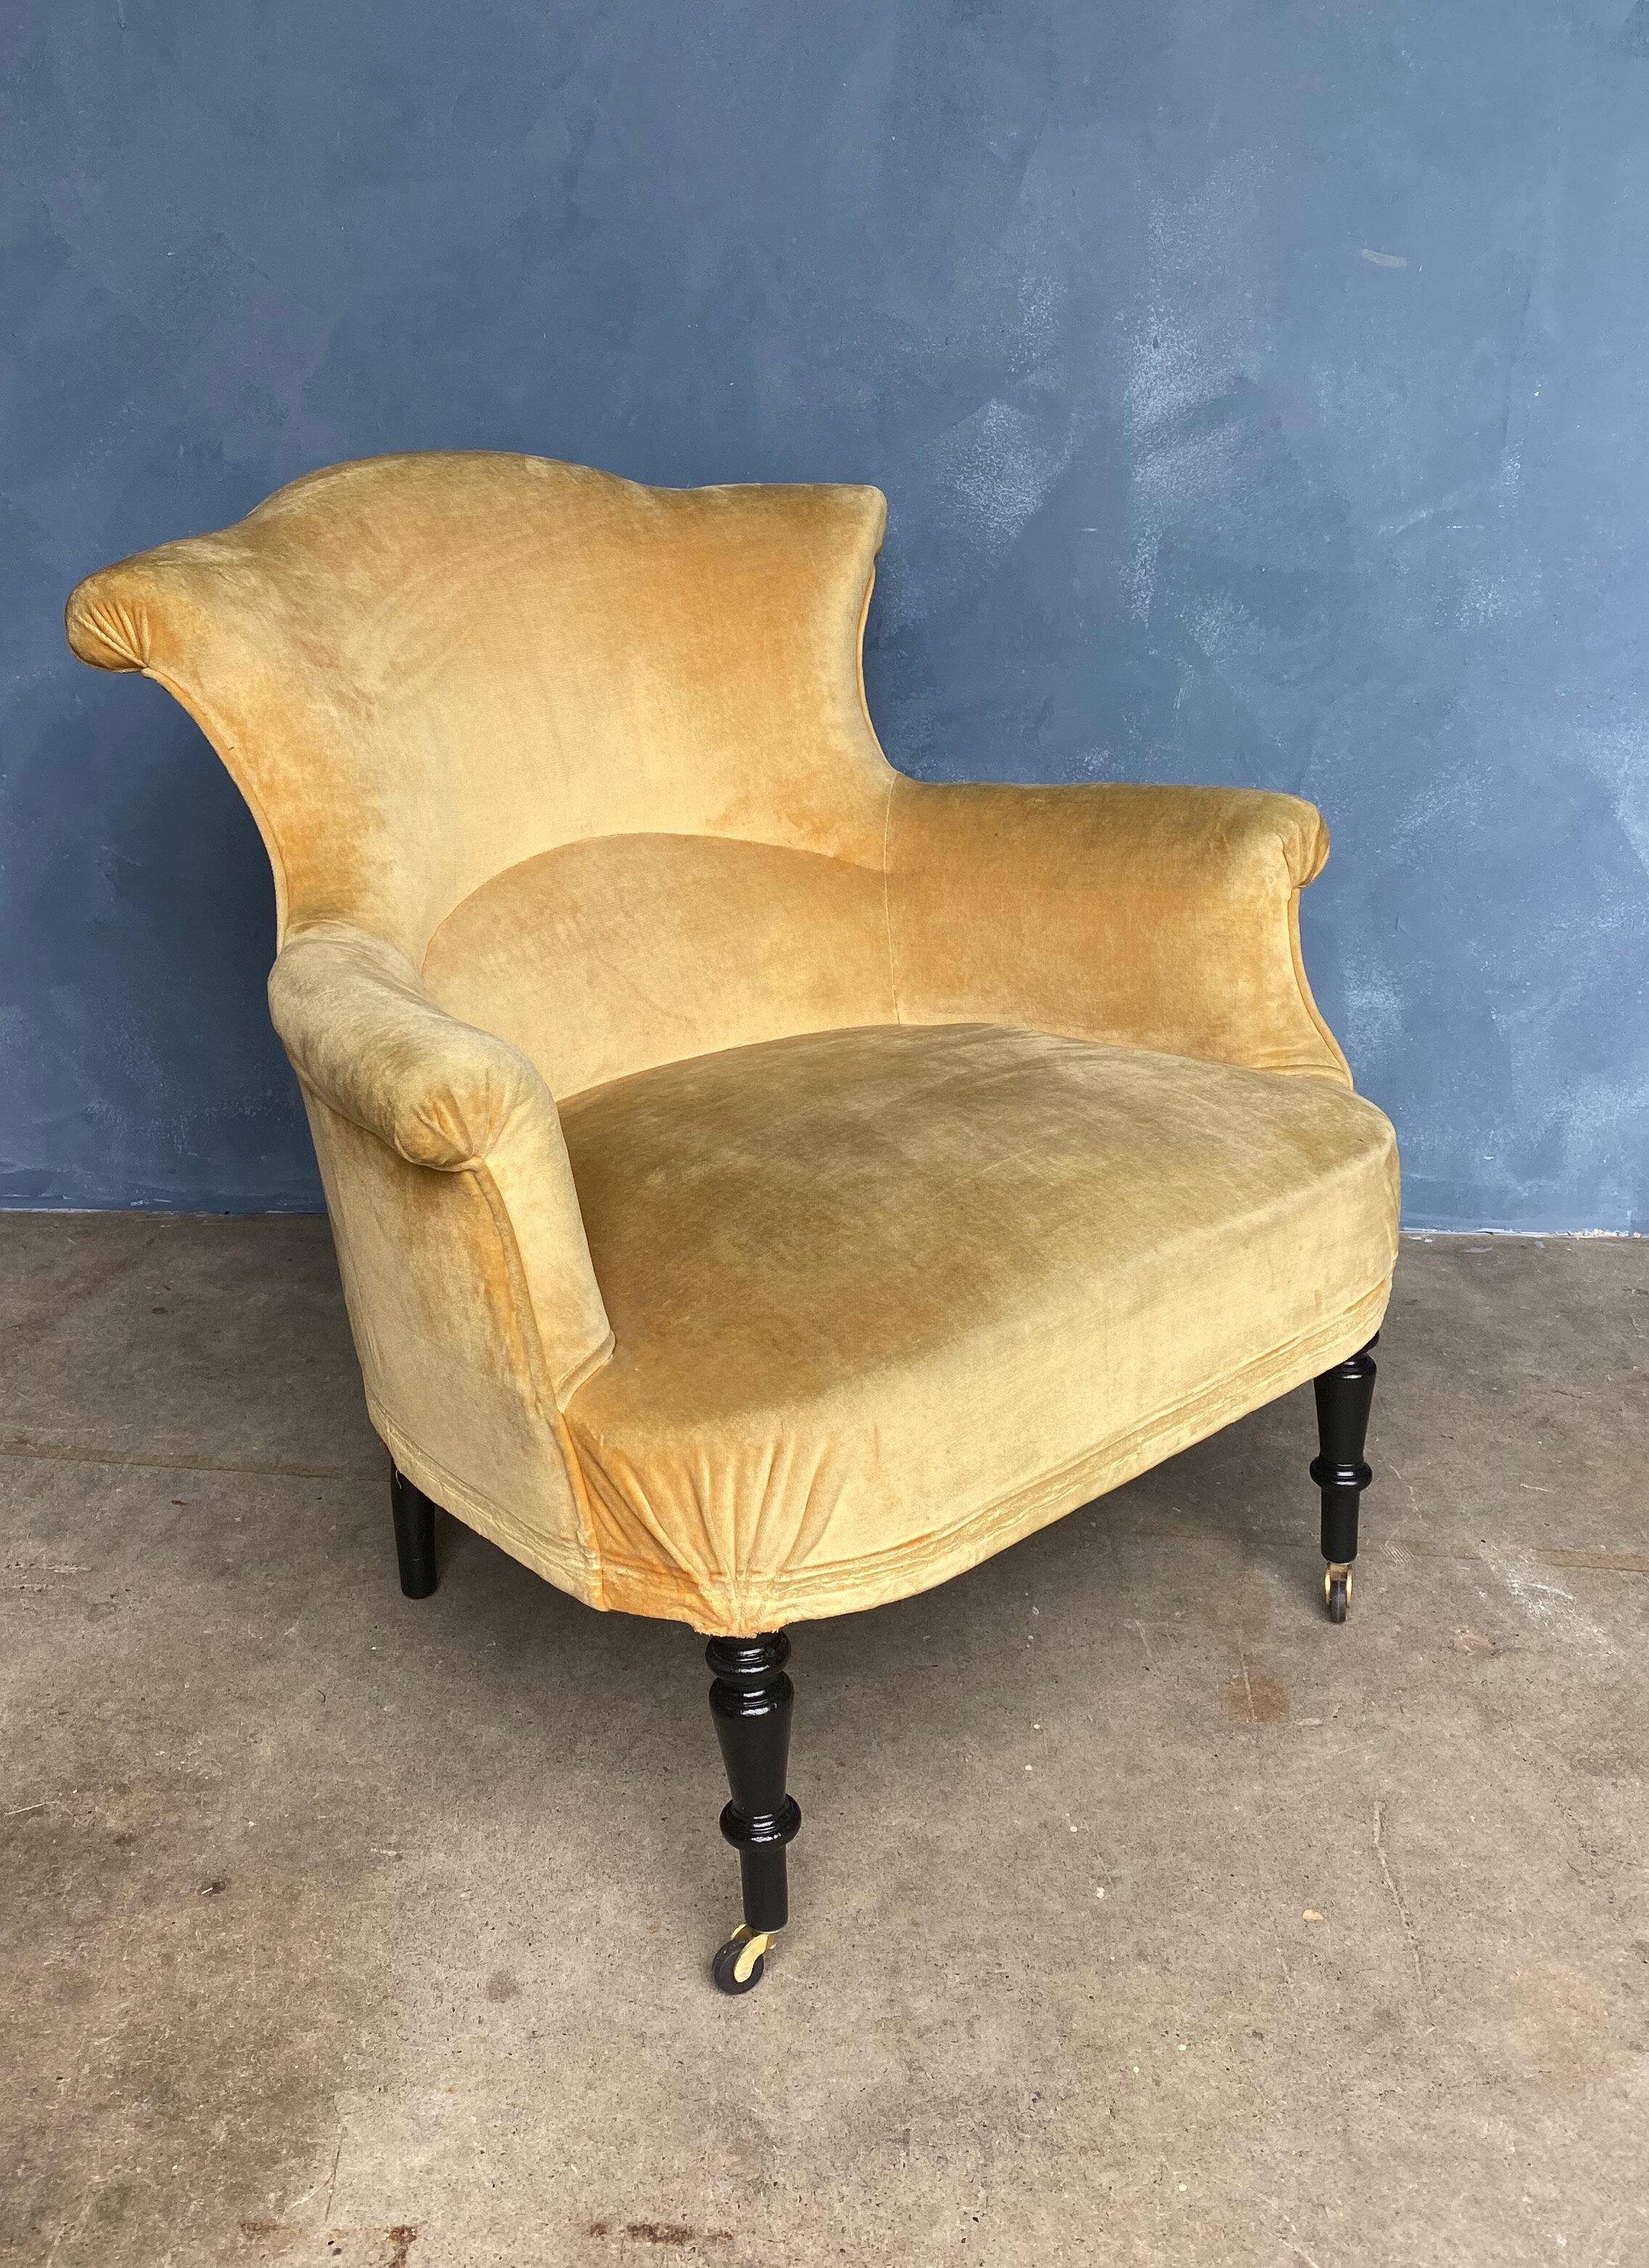 Un luxueux grand fauteuil français Napoléon III en velours doré. Combinaison parfaite du luxe vintage et du style moderne, ce fauteuil Napoléon III du XIXe siècle a été restauré pour une qualité optimale, et les pieds ont été remis à neuf pour plus